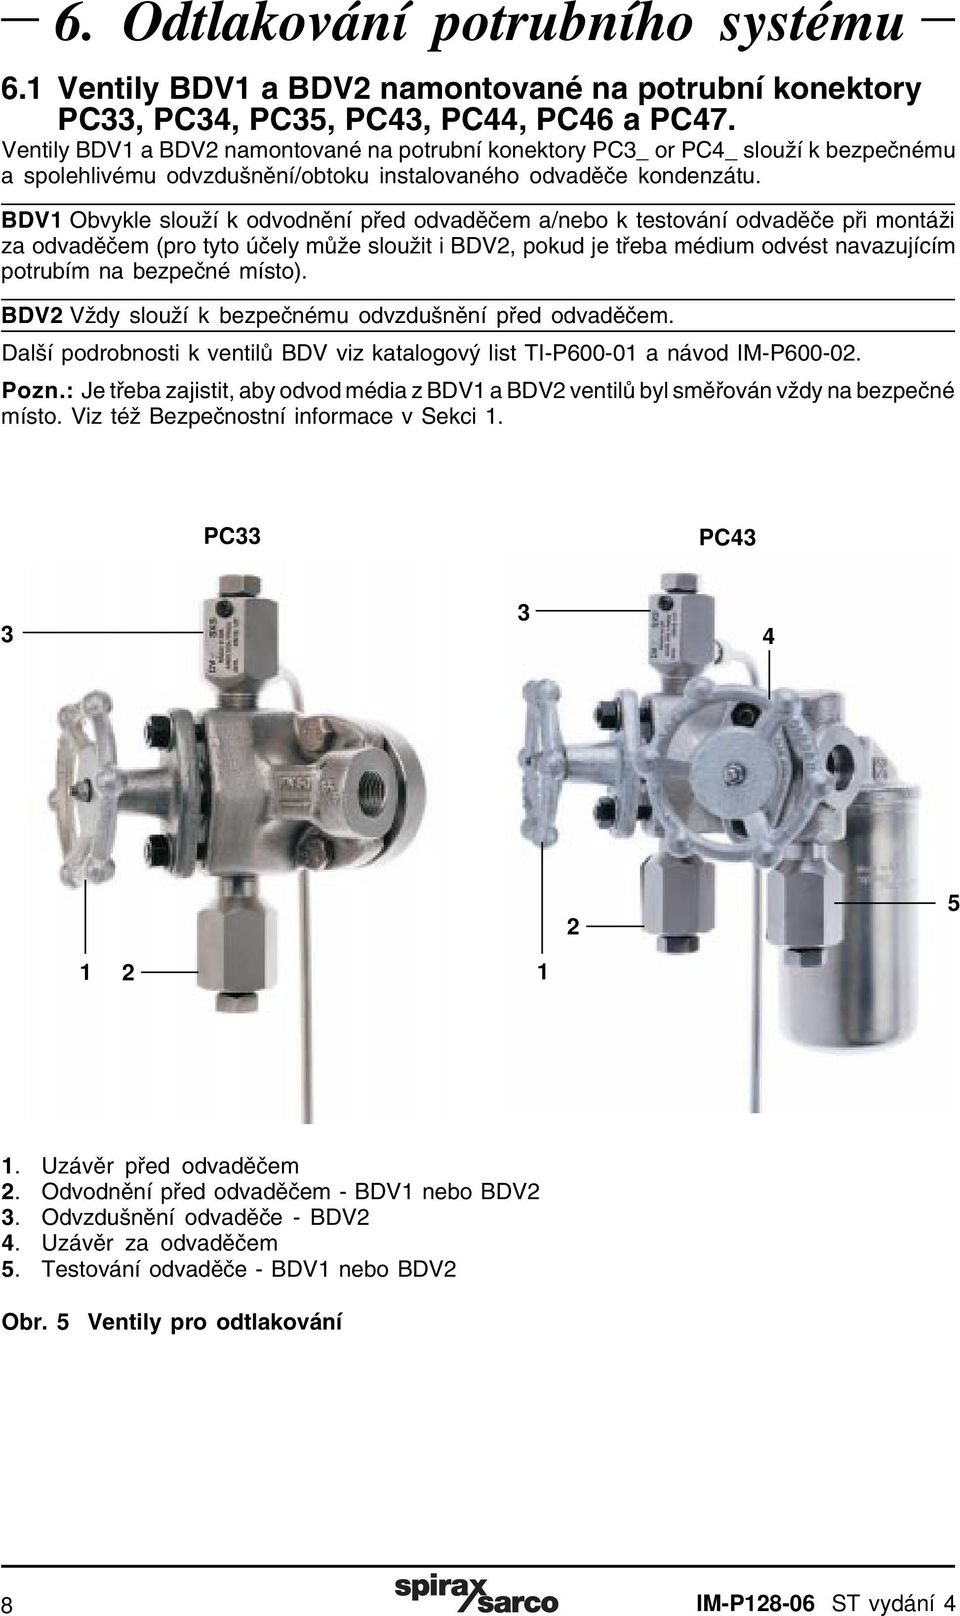 BDV1 Obvykle slouží k odvodnění před odvaděčem a/nebo k testování odvaděče při montáži za odvaděčem (pro tyto účely může sloužit i BDV2, pokud je třeba médium odvést navazujícím potrubím na bezpečné